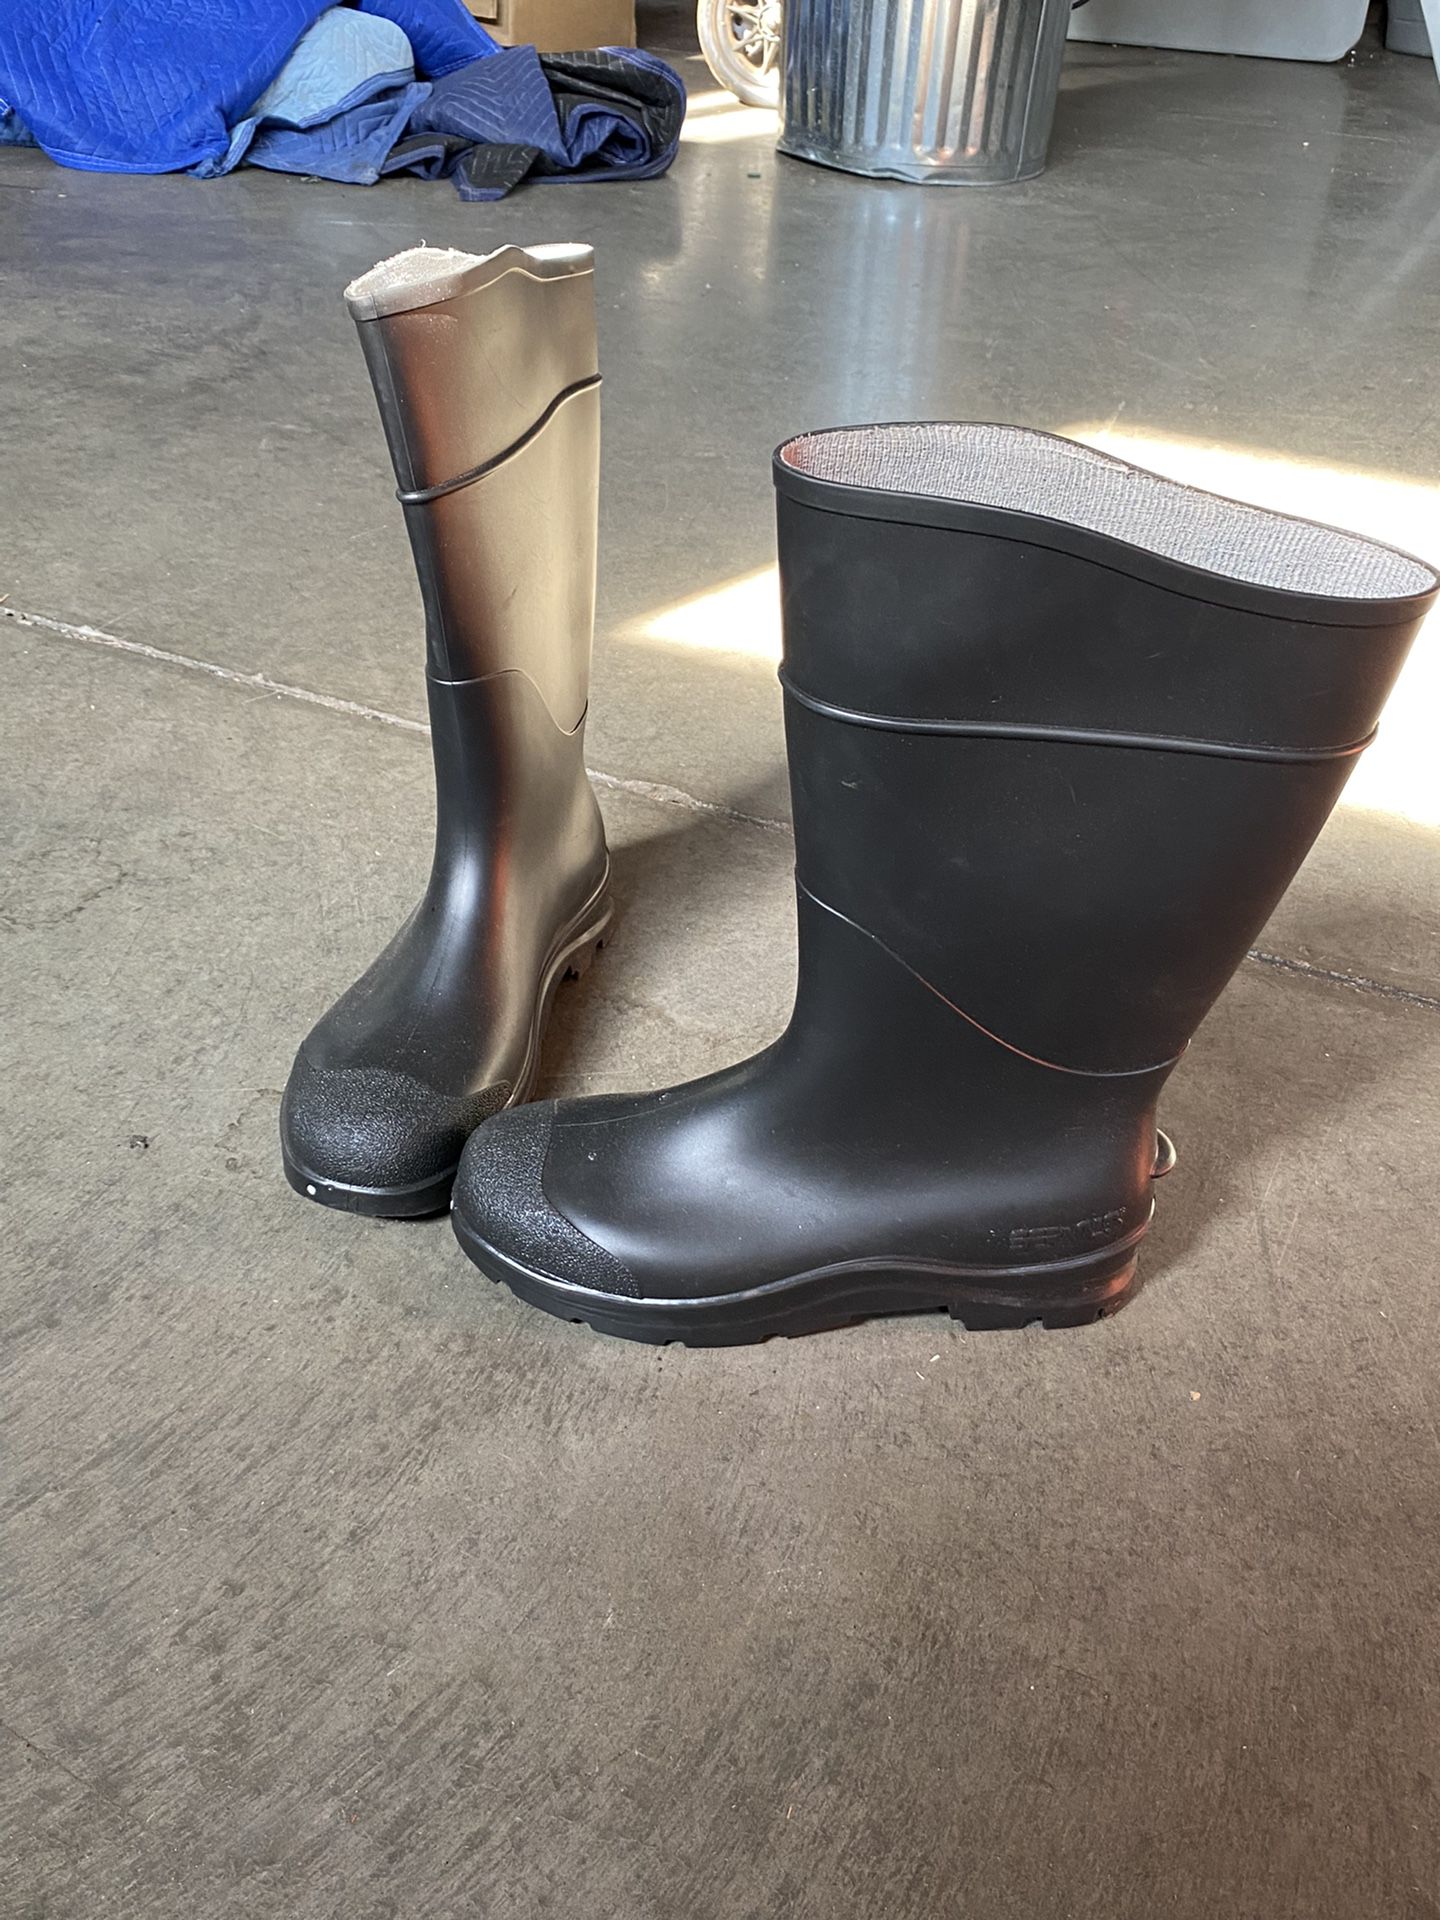 Servus Rubber Boots (Size 11) 